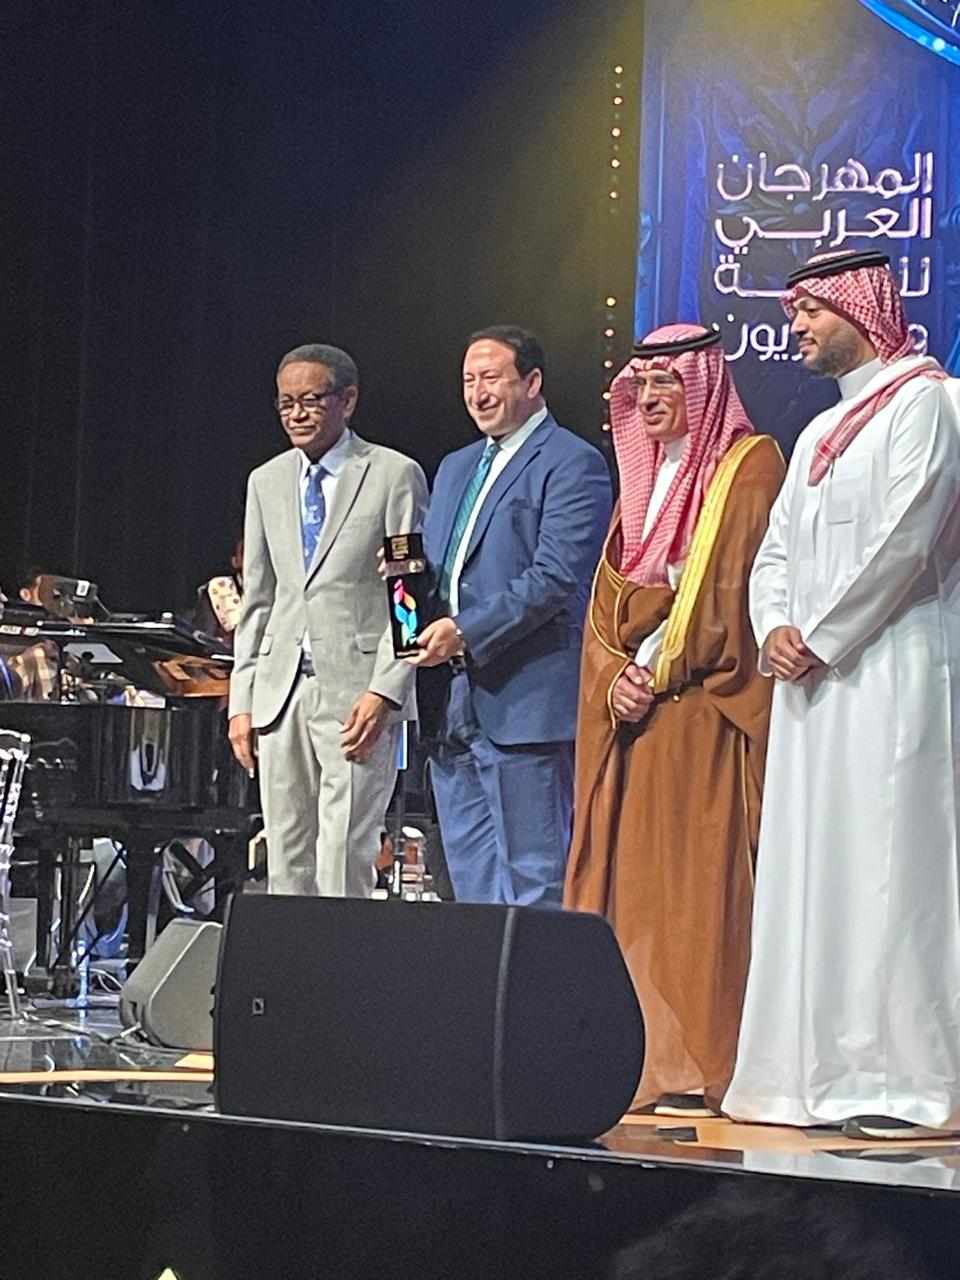  MBC مصر  تحصد الجوائز الذهبية والفضية في المهرجان العربي للإذاعة والتلفزيون 